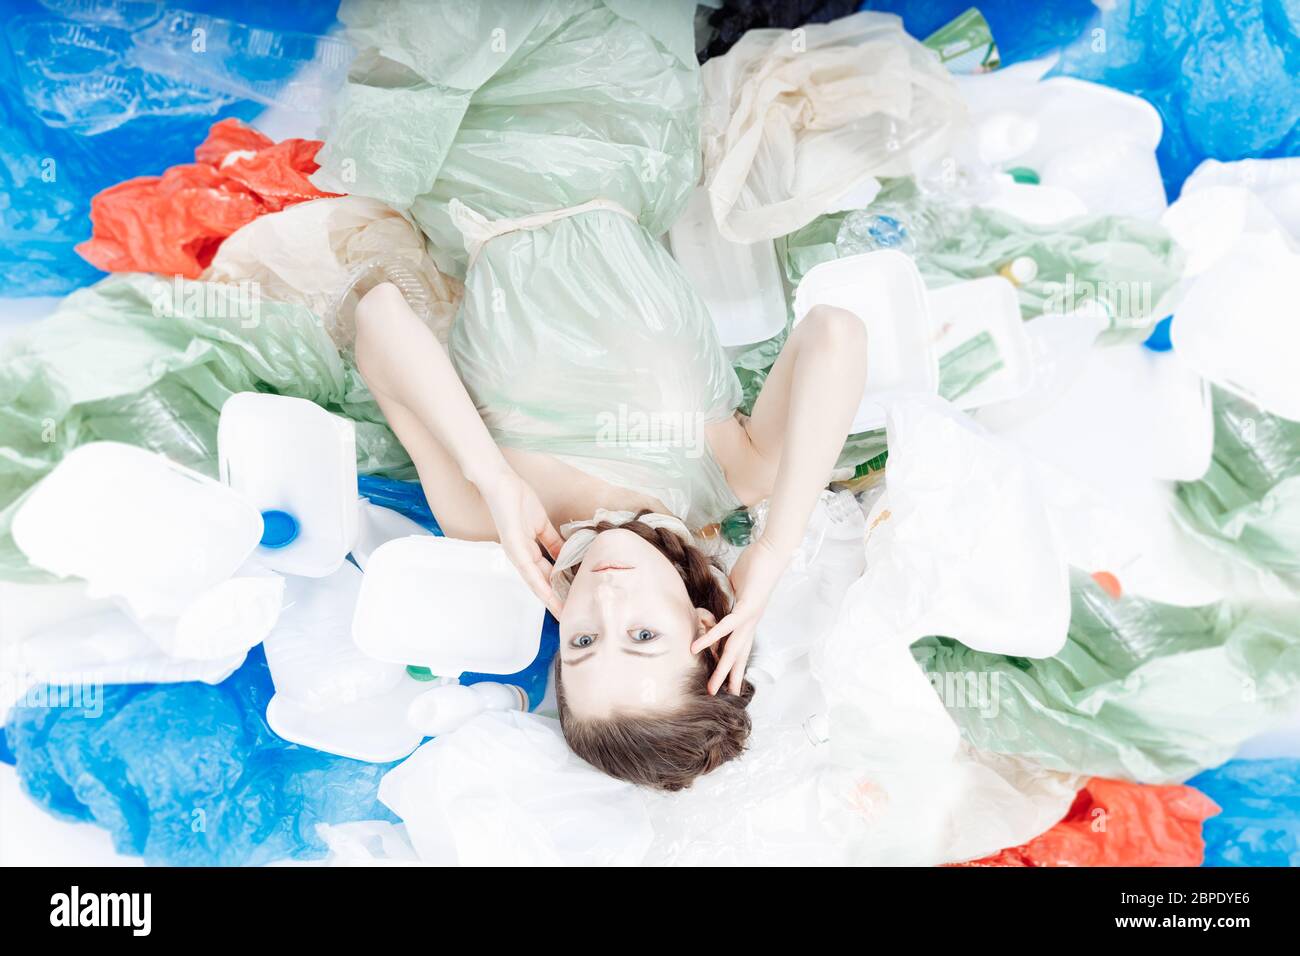 Una bella ragazza di aspetto europeo è sdraiata su una montagna di plastica. Foto Stock